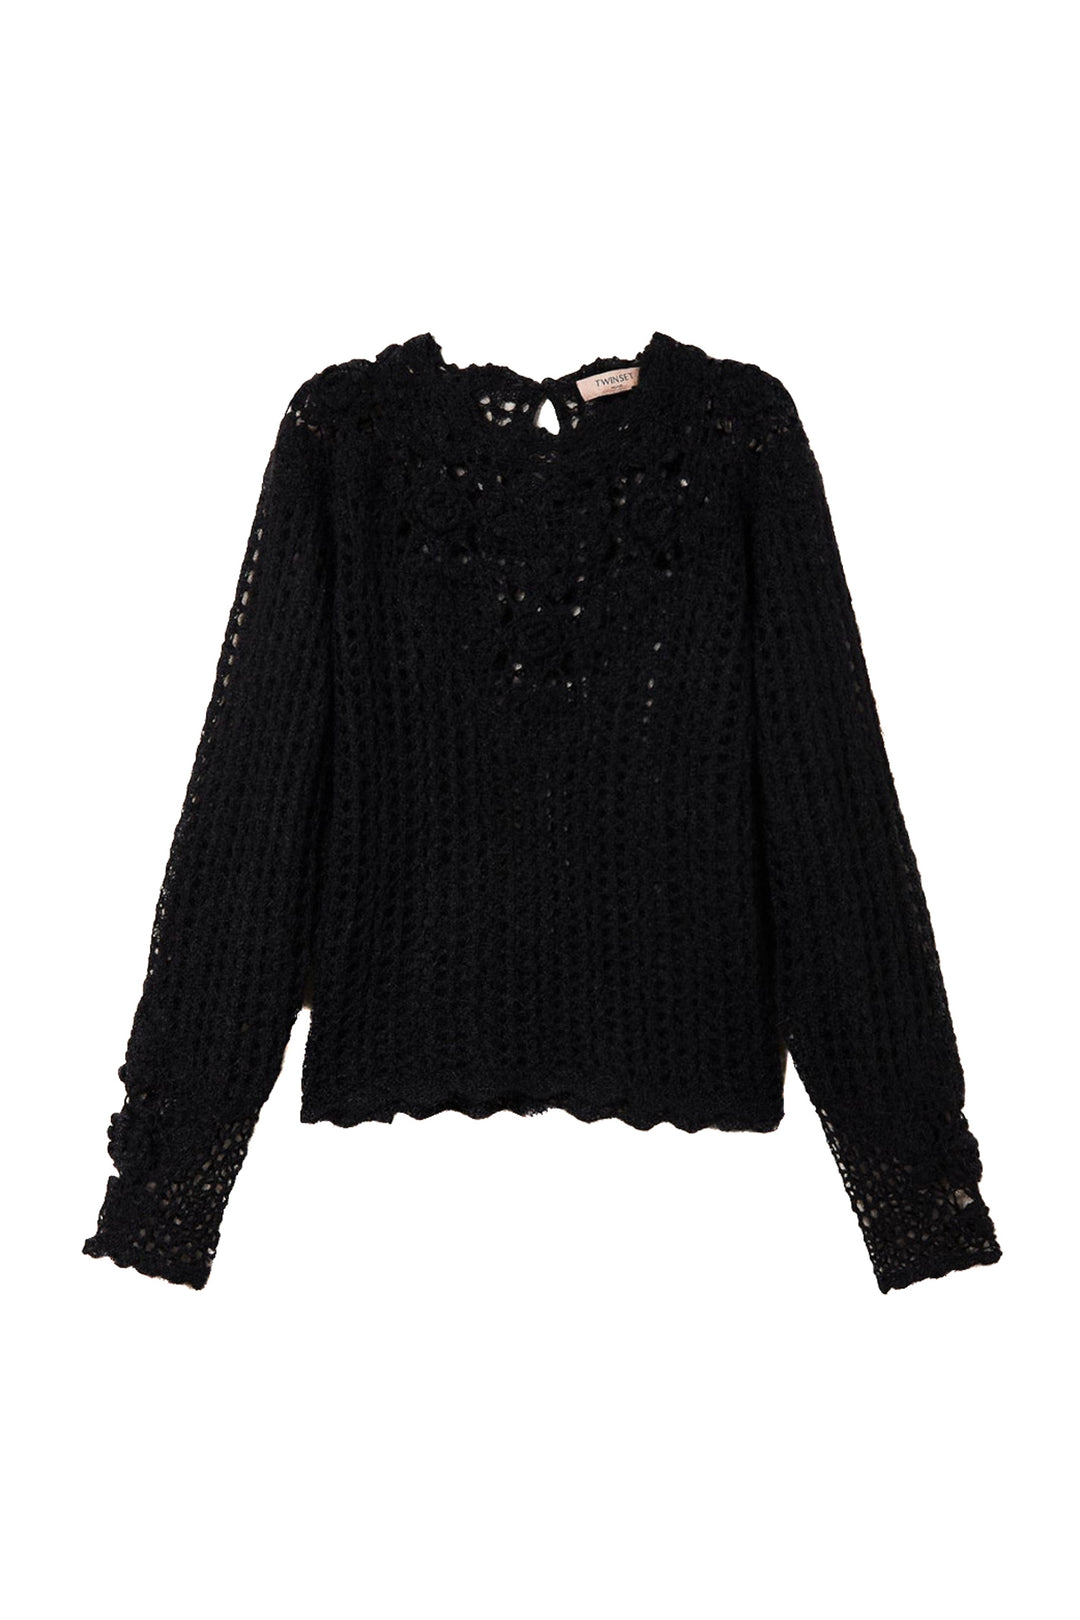 TWINSET Maglia crochet nera in misto lana e mohair - Mancinelli 1954